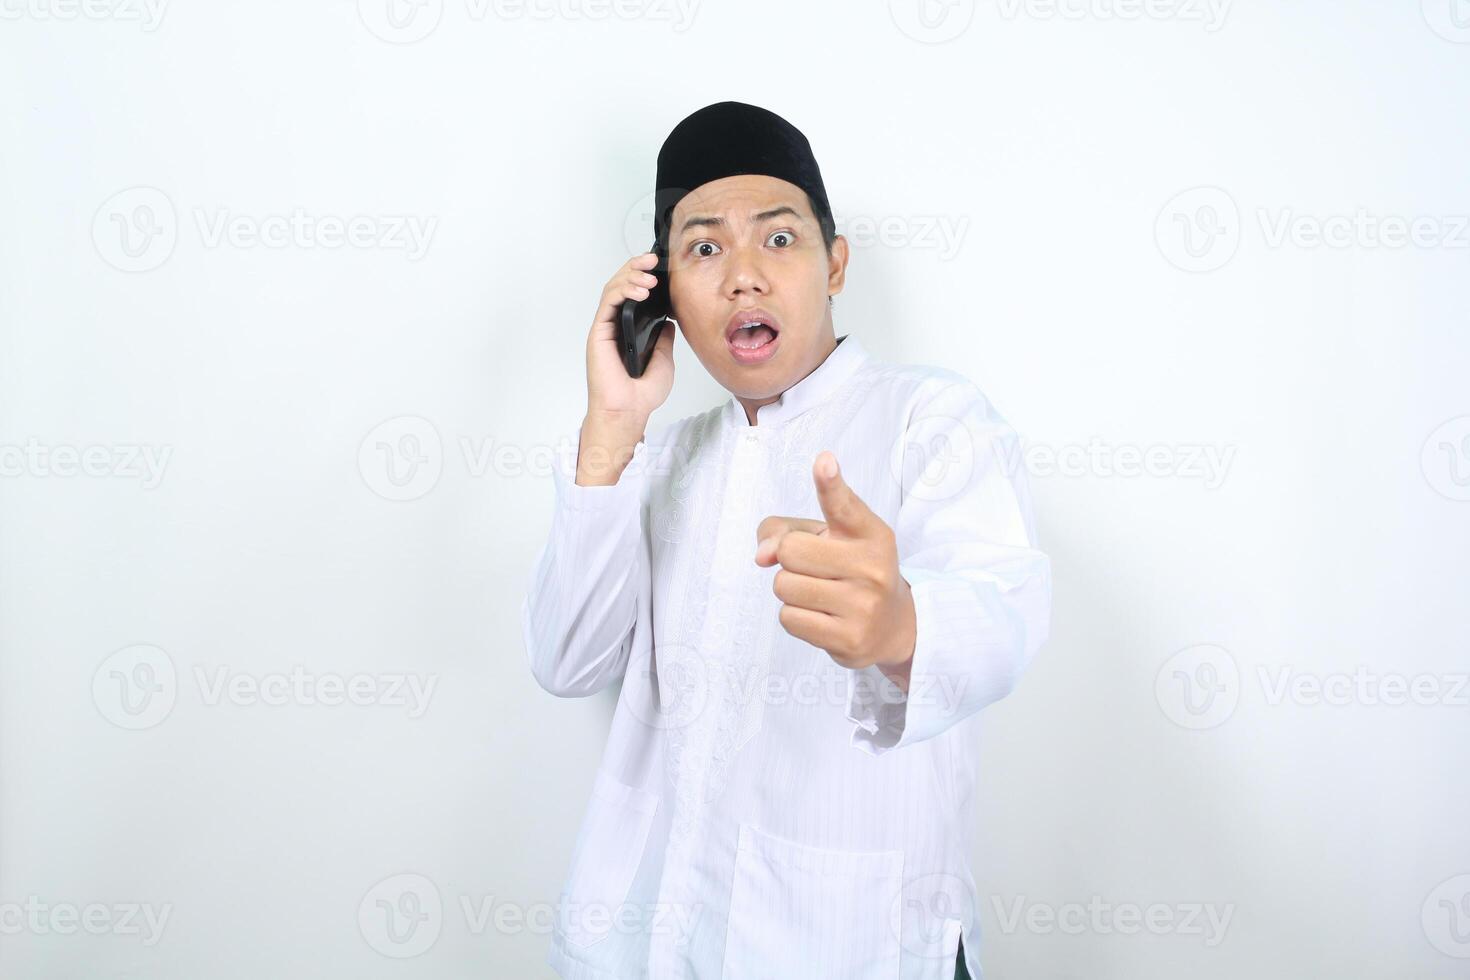 chockade asiatisk muslim man pekande på kamera medan talande på mobil telefon foto